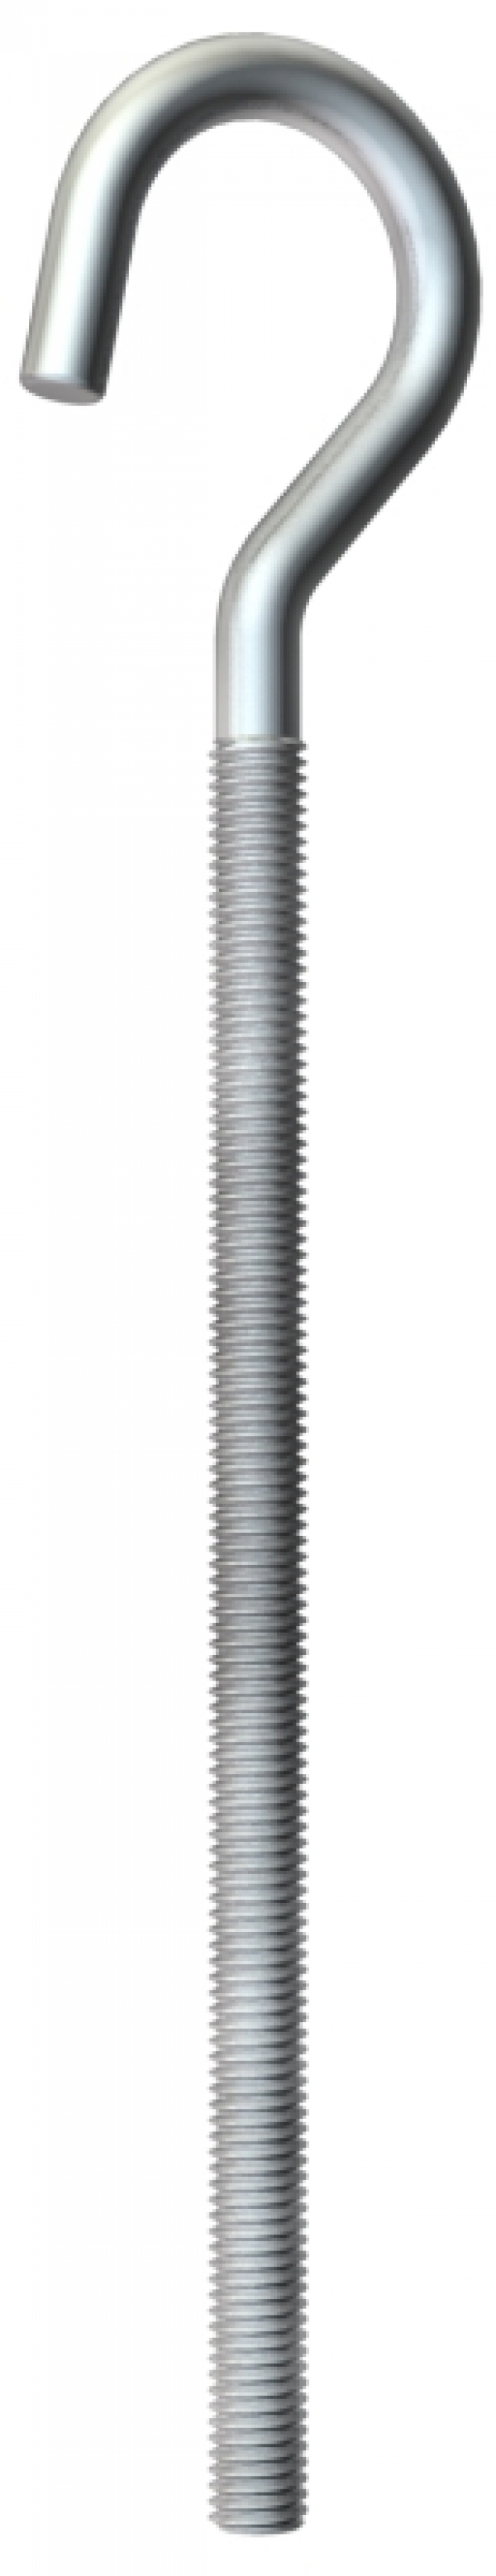 3470237 - OBO BETTERMANN Крюк потолочный M6x125мм (867 M6X125 G).